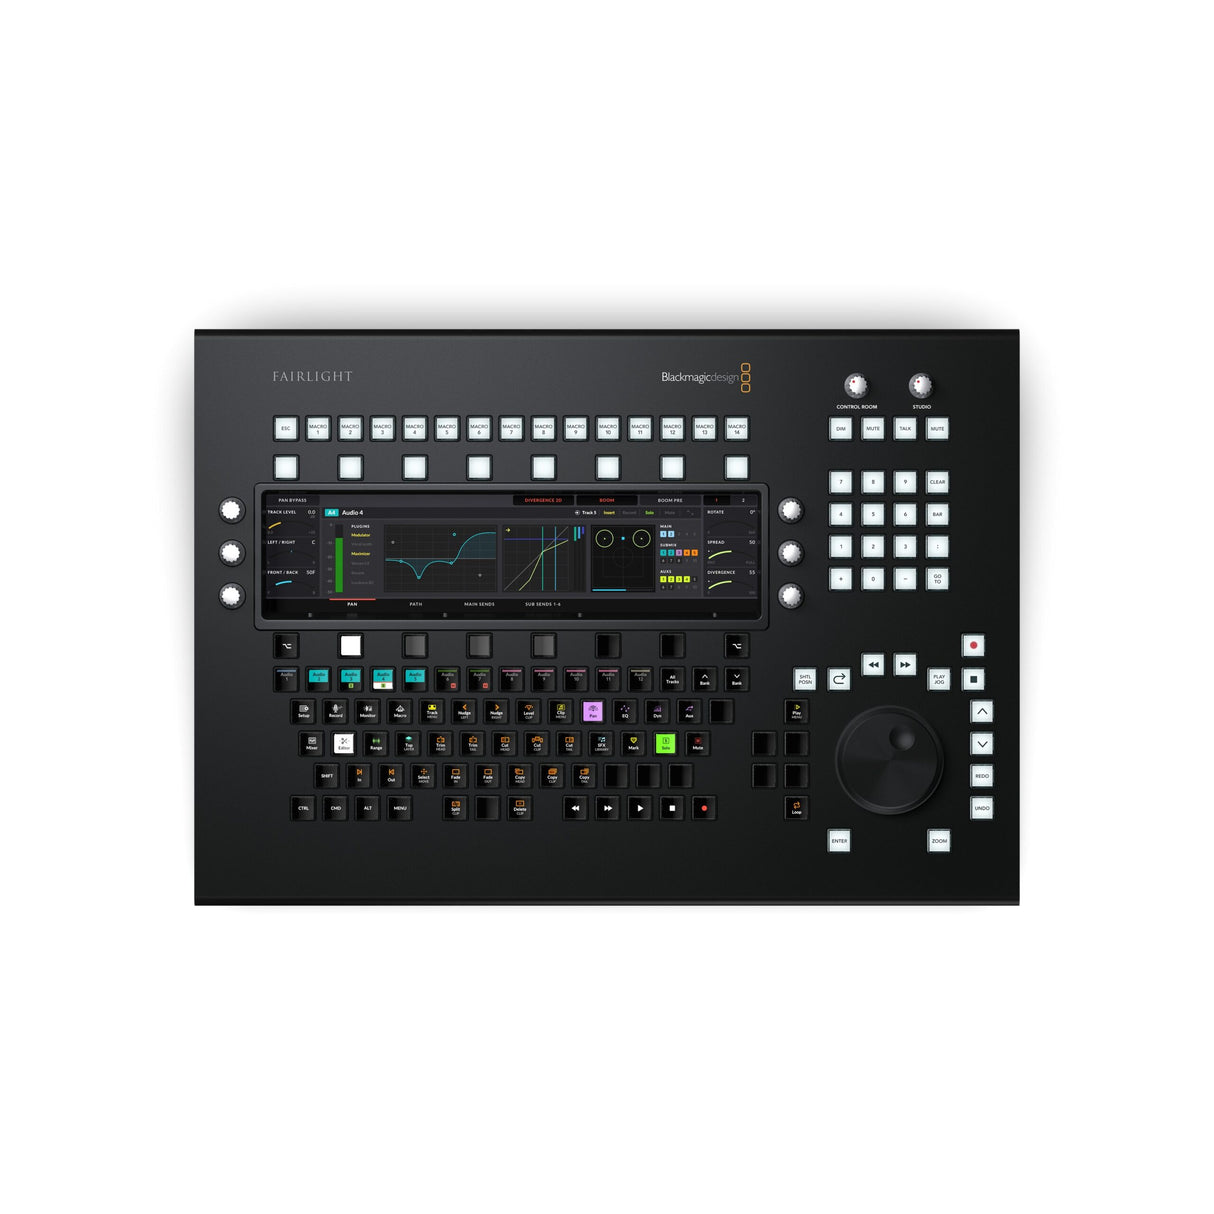 Blackmagic Design Fairlight Desktop Audio Editor